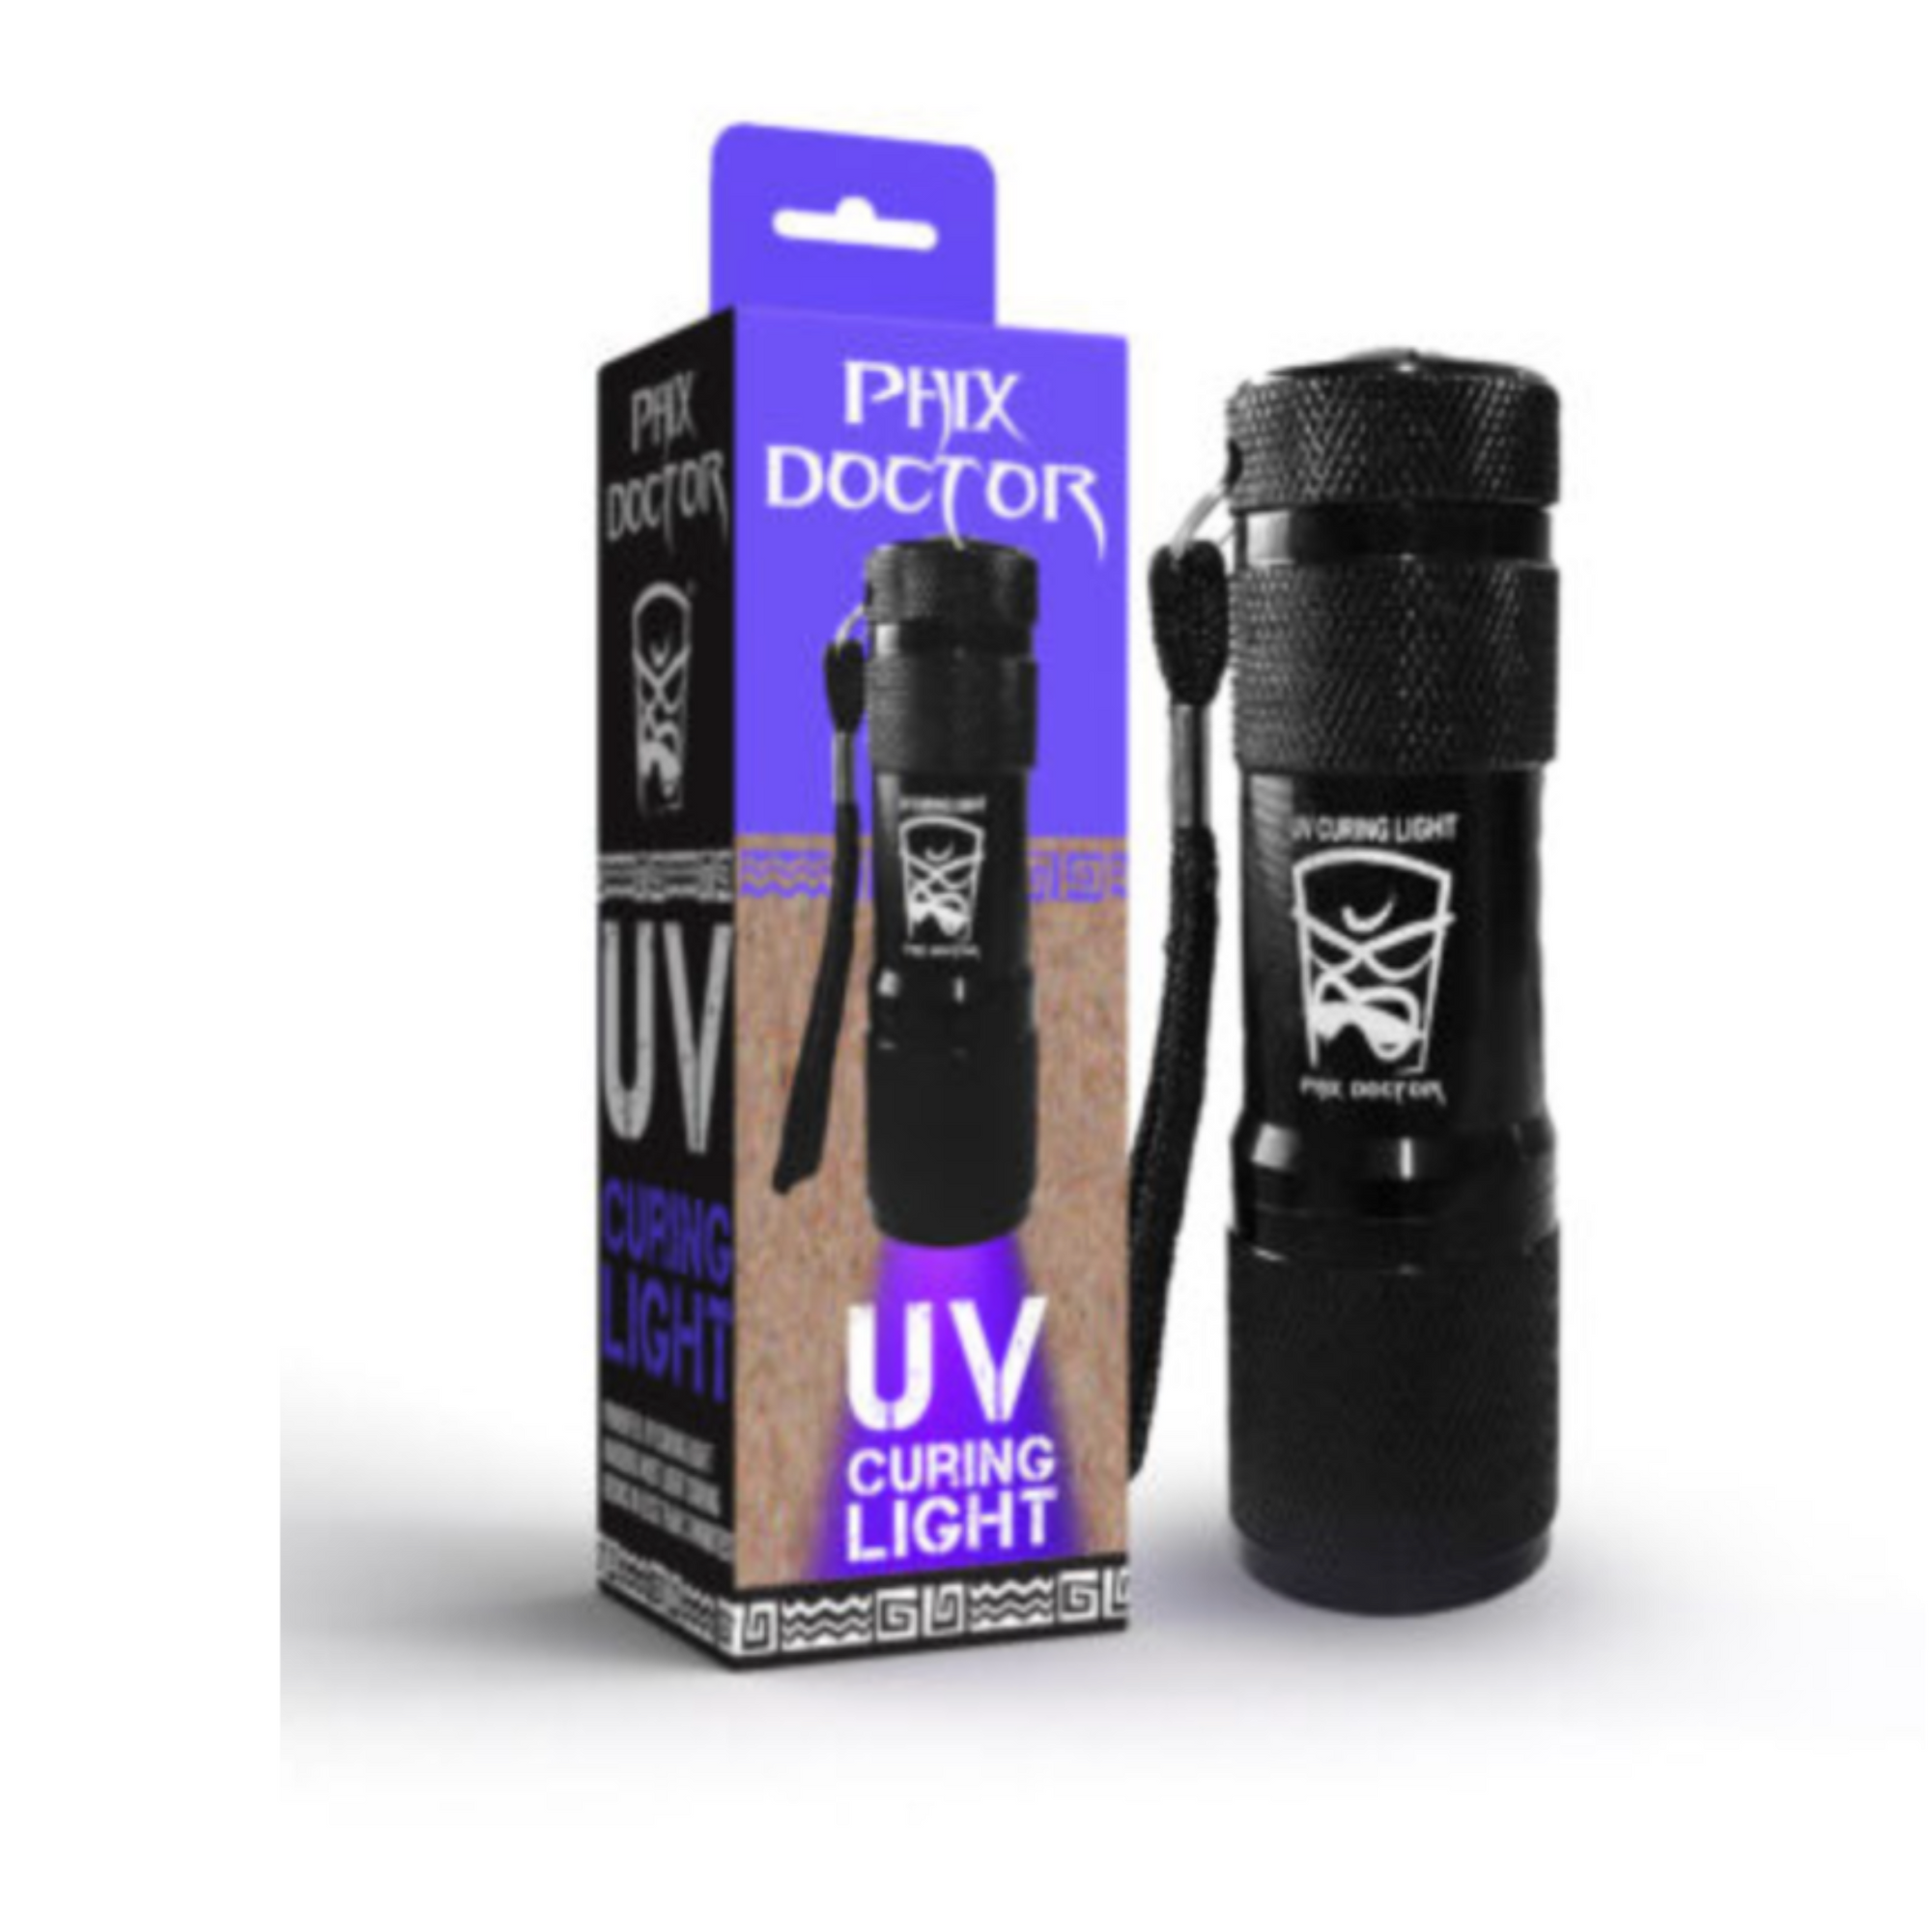 Phix Doctor UV Curing Light